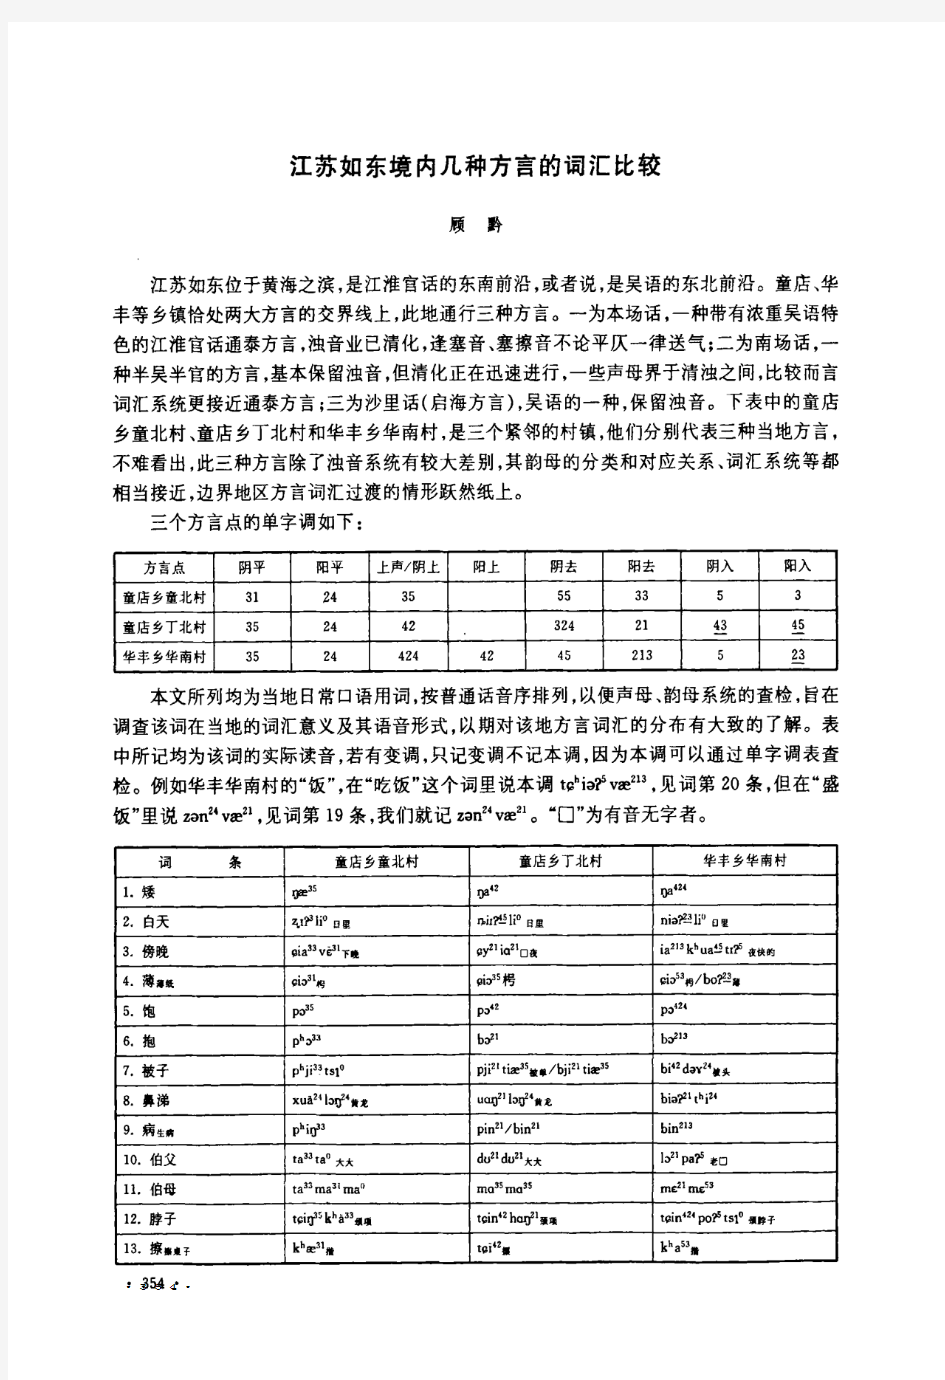 江苏如东境内几种方言的词汇比较